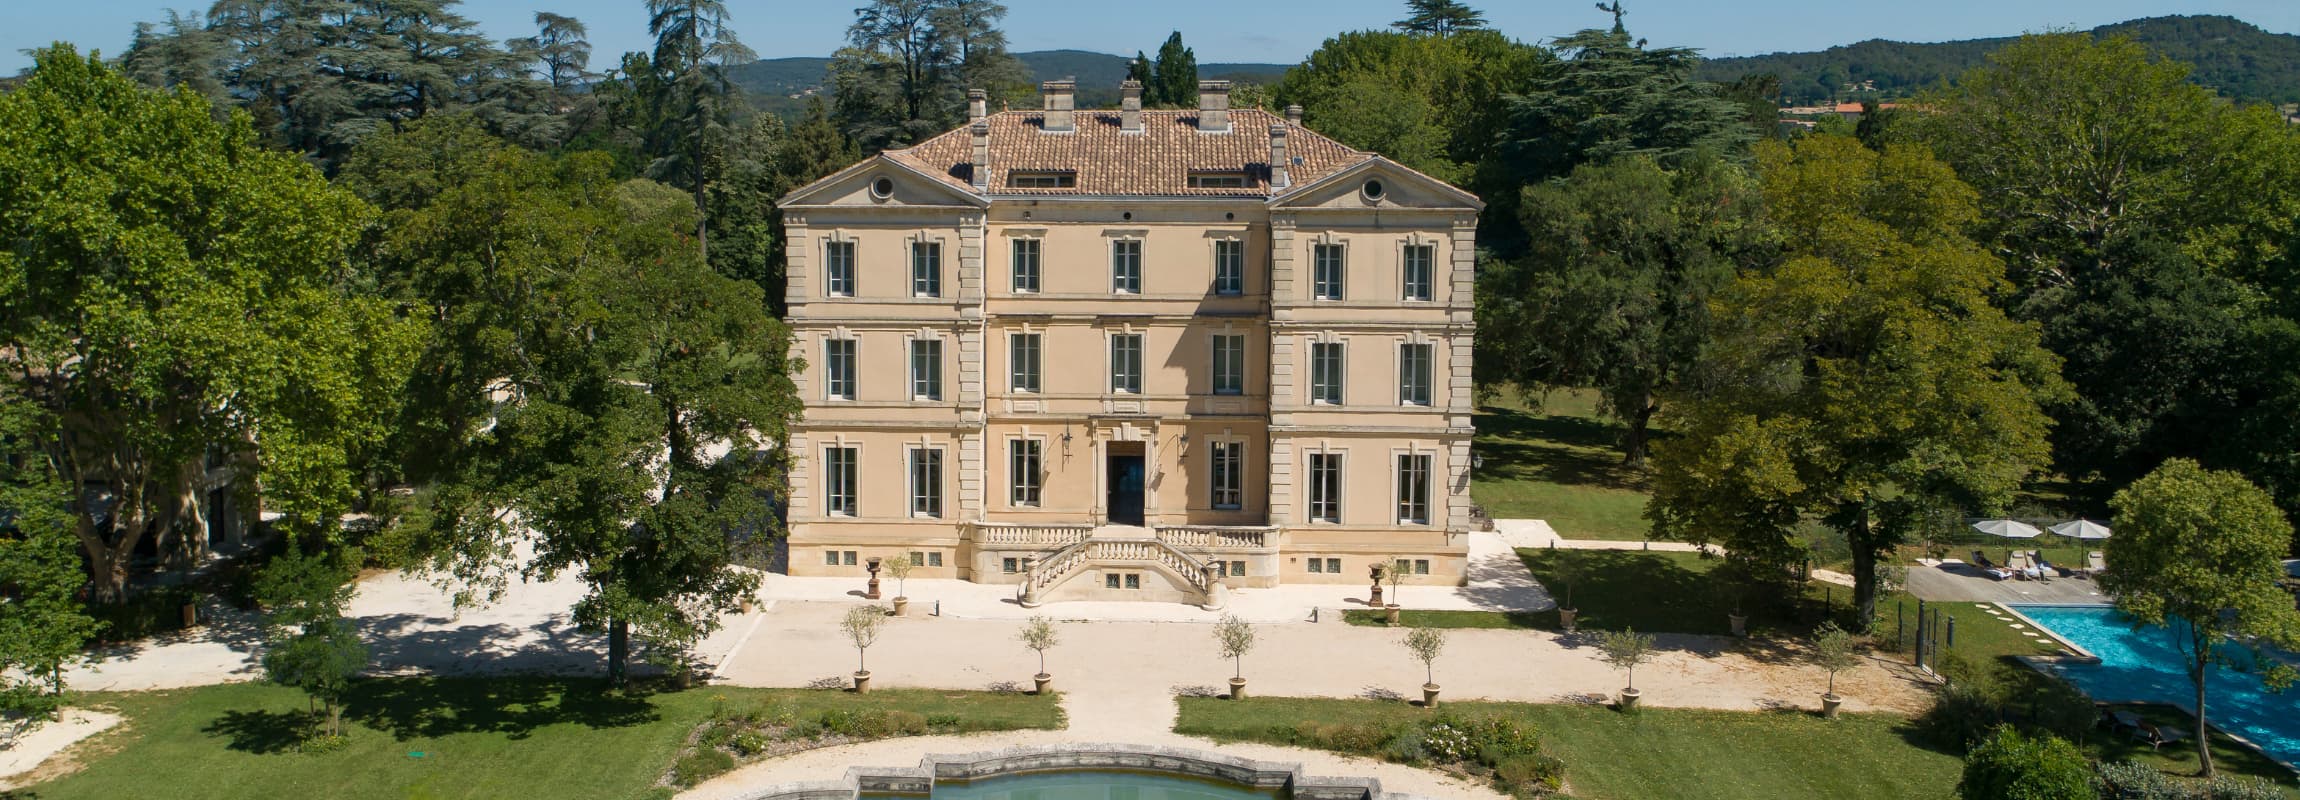 Chateau Hotel Provence 